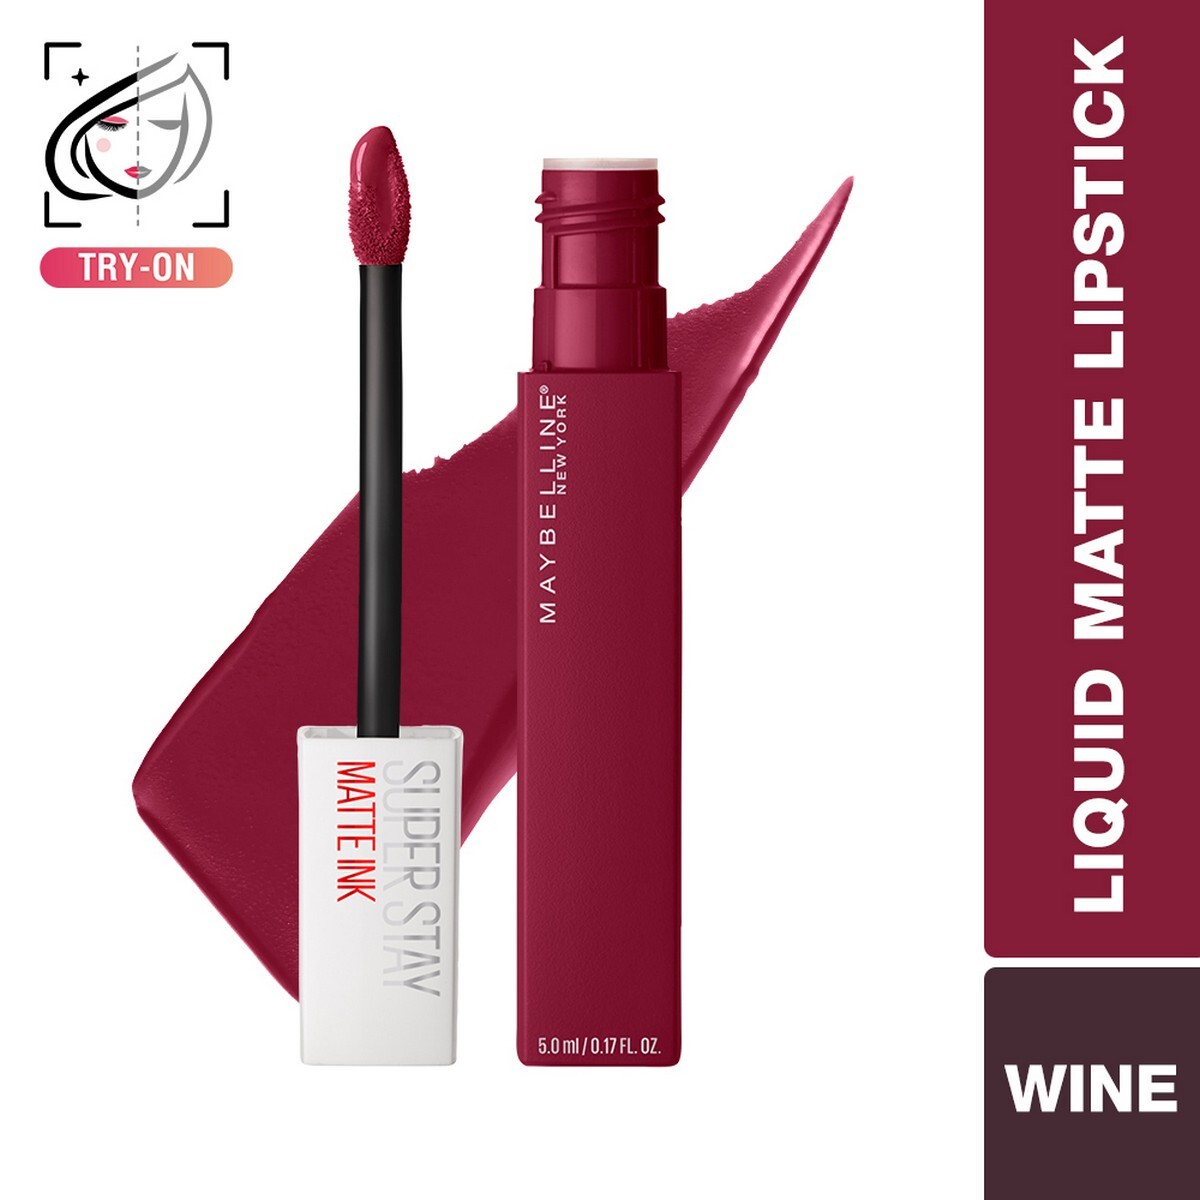 Maybelline New York Super Stay Matte Ink Liquid Lipstick, 115 Founder, 5g